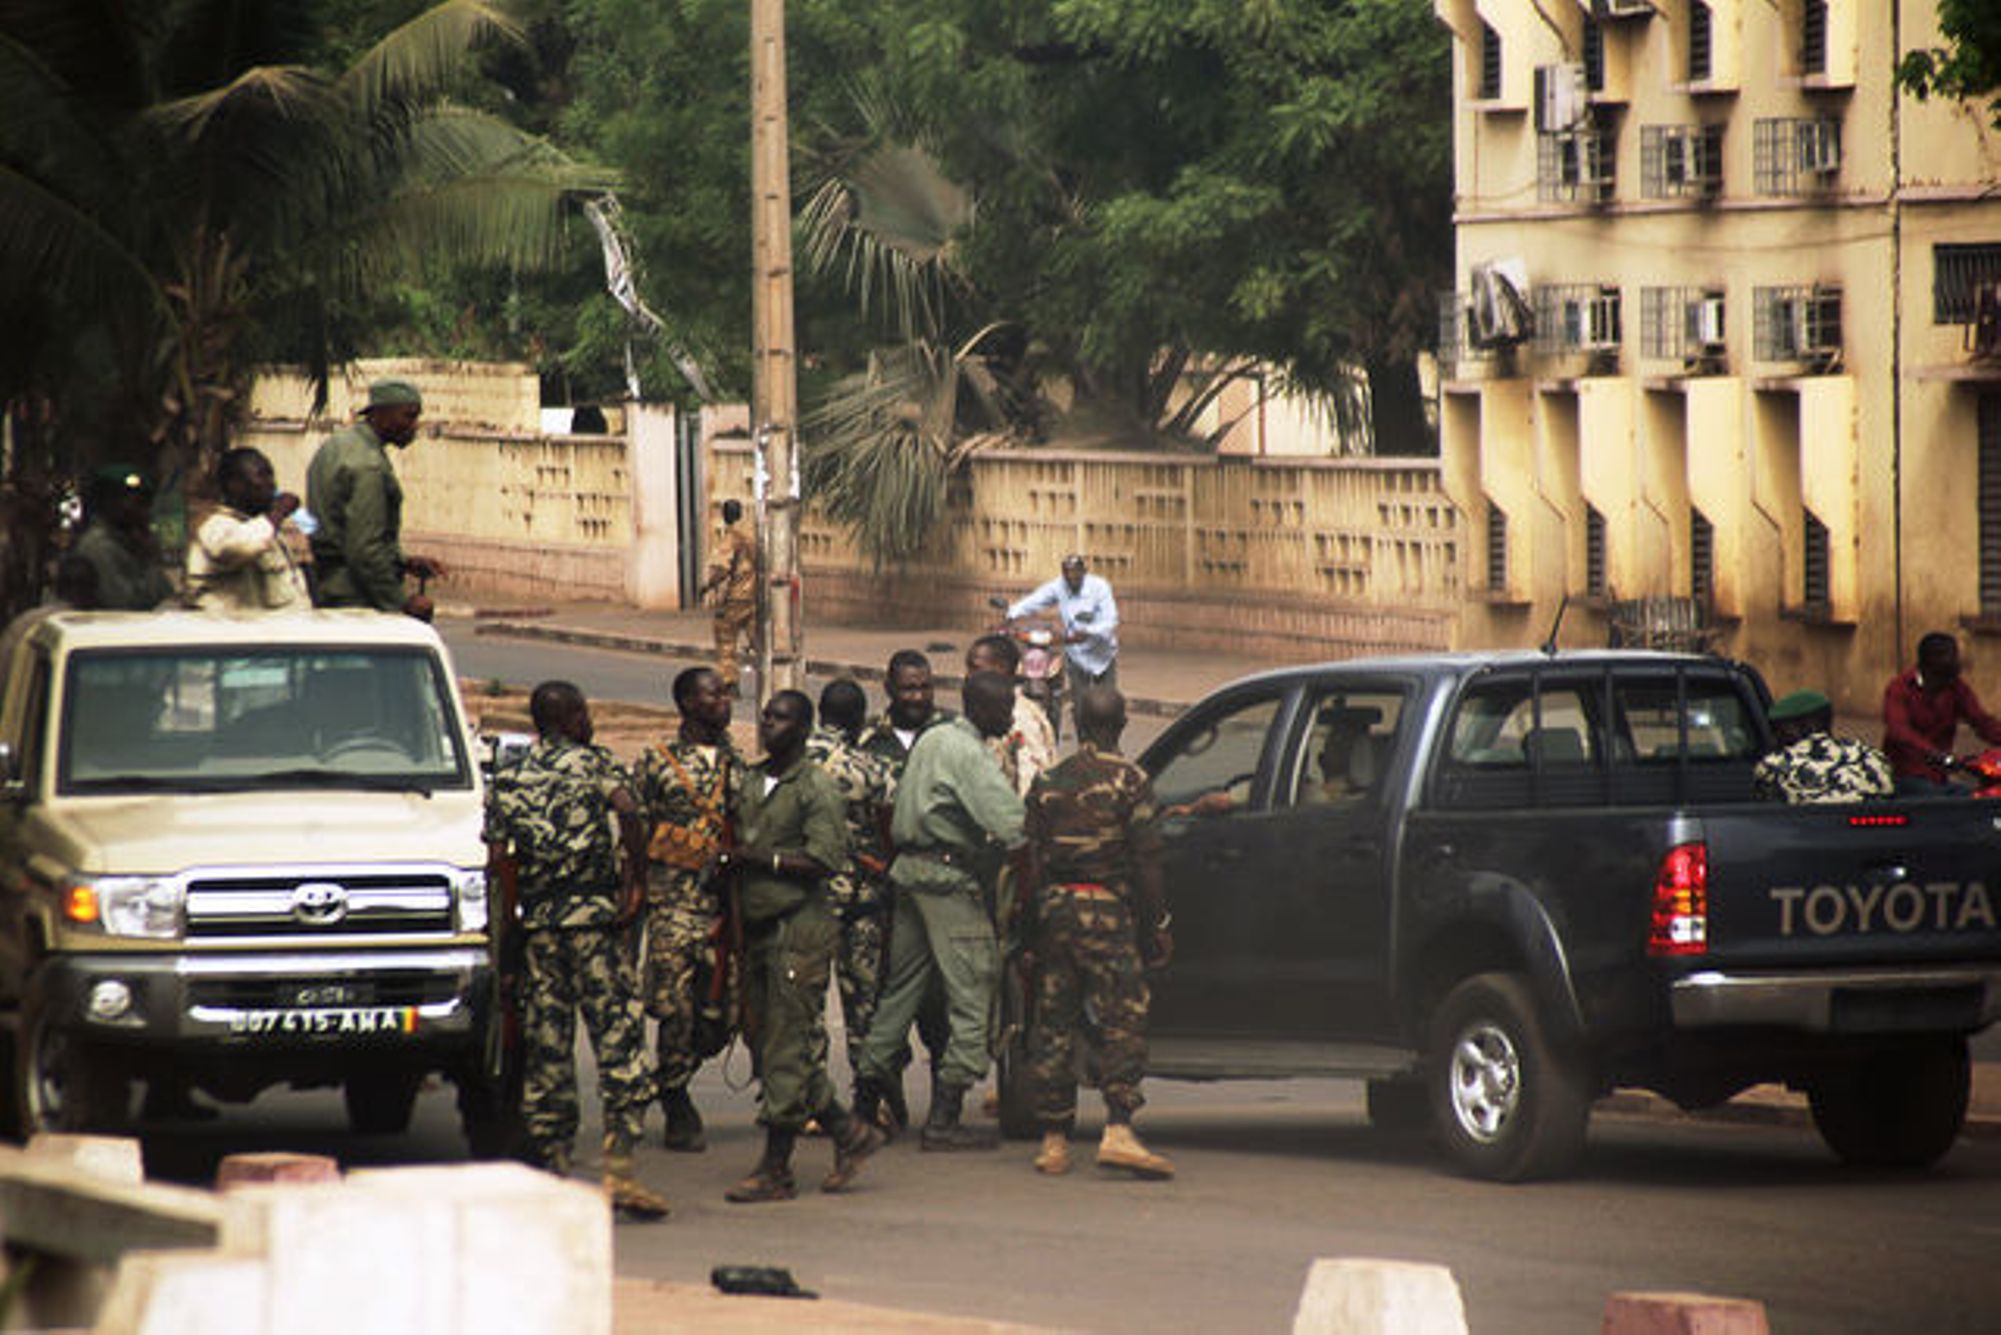 Dernière minute : Coup d'État au Mali